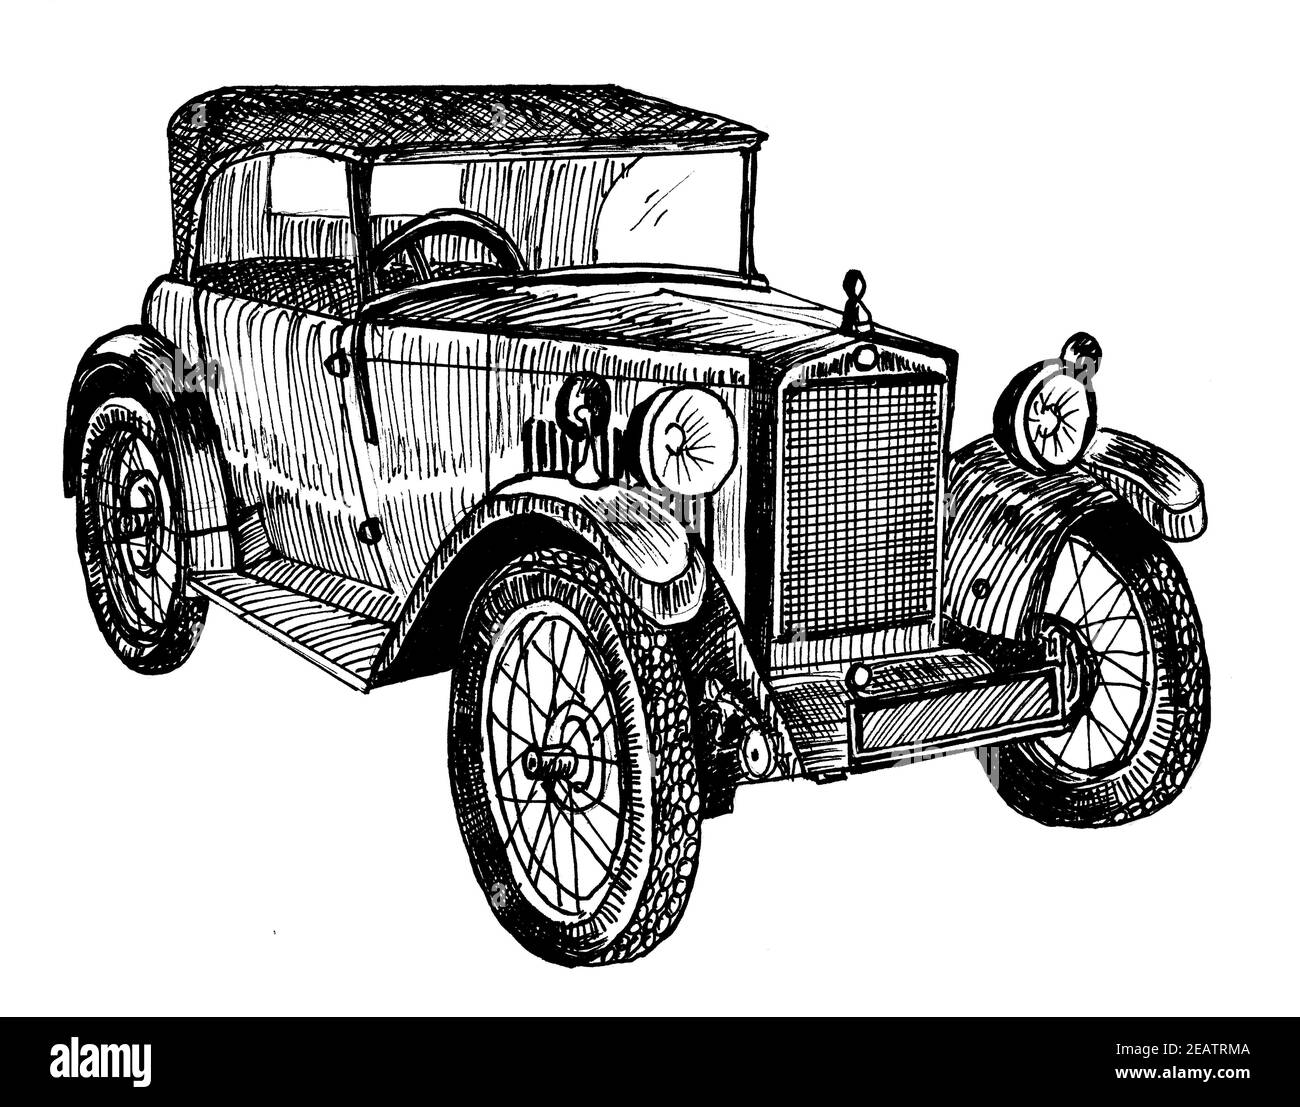 Grafica di schizzo doodle di illustrazione di automobile retrò Foto Stock